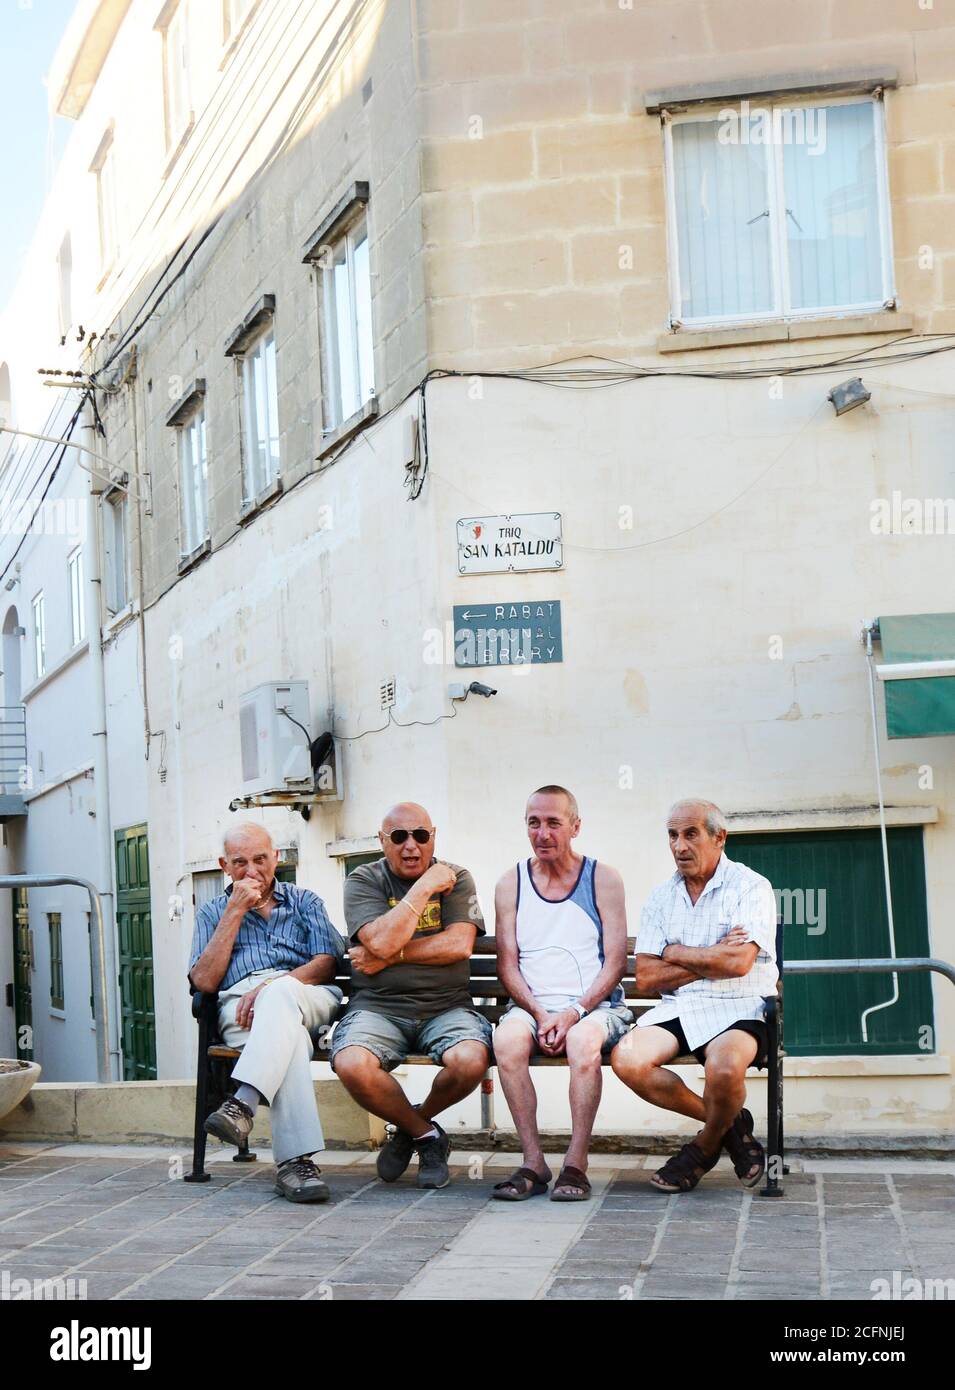 Hombres malteses socializando en Rabat, Malta. Foto de stock